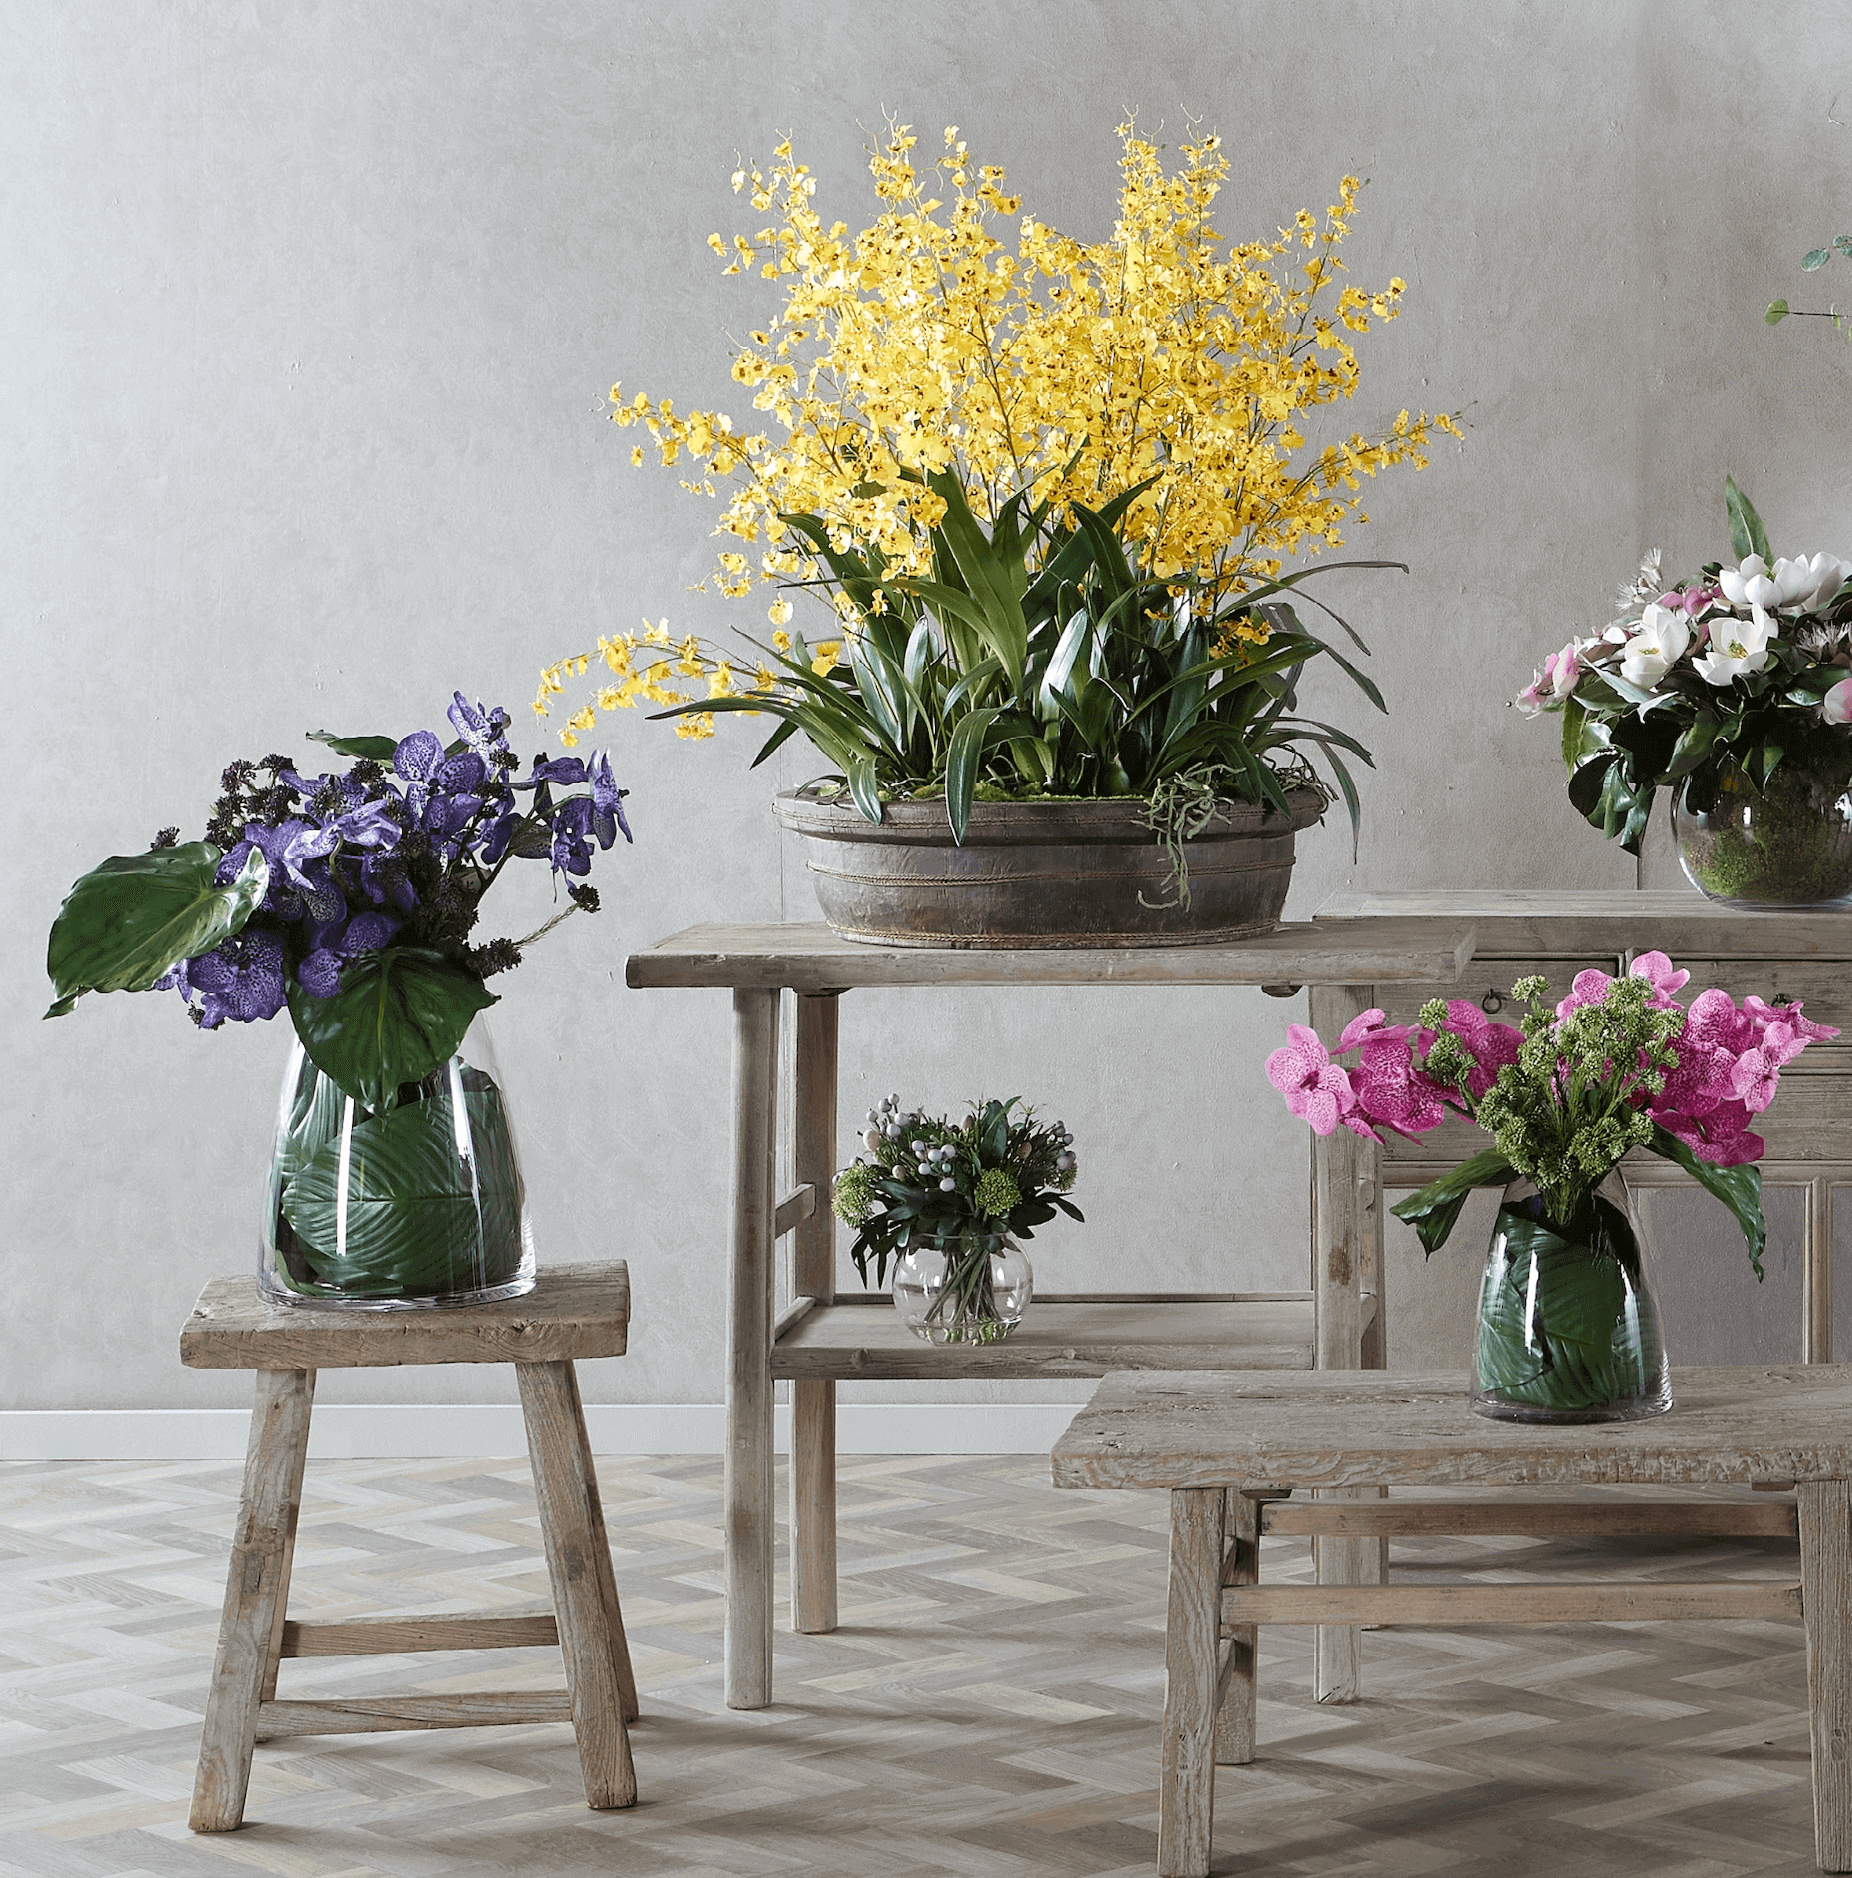 artificial flower arrangements on tables